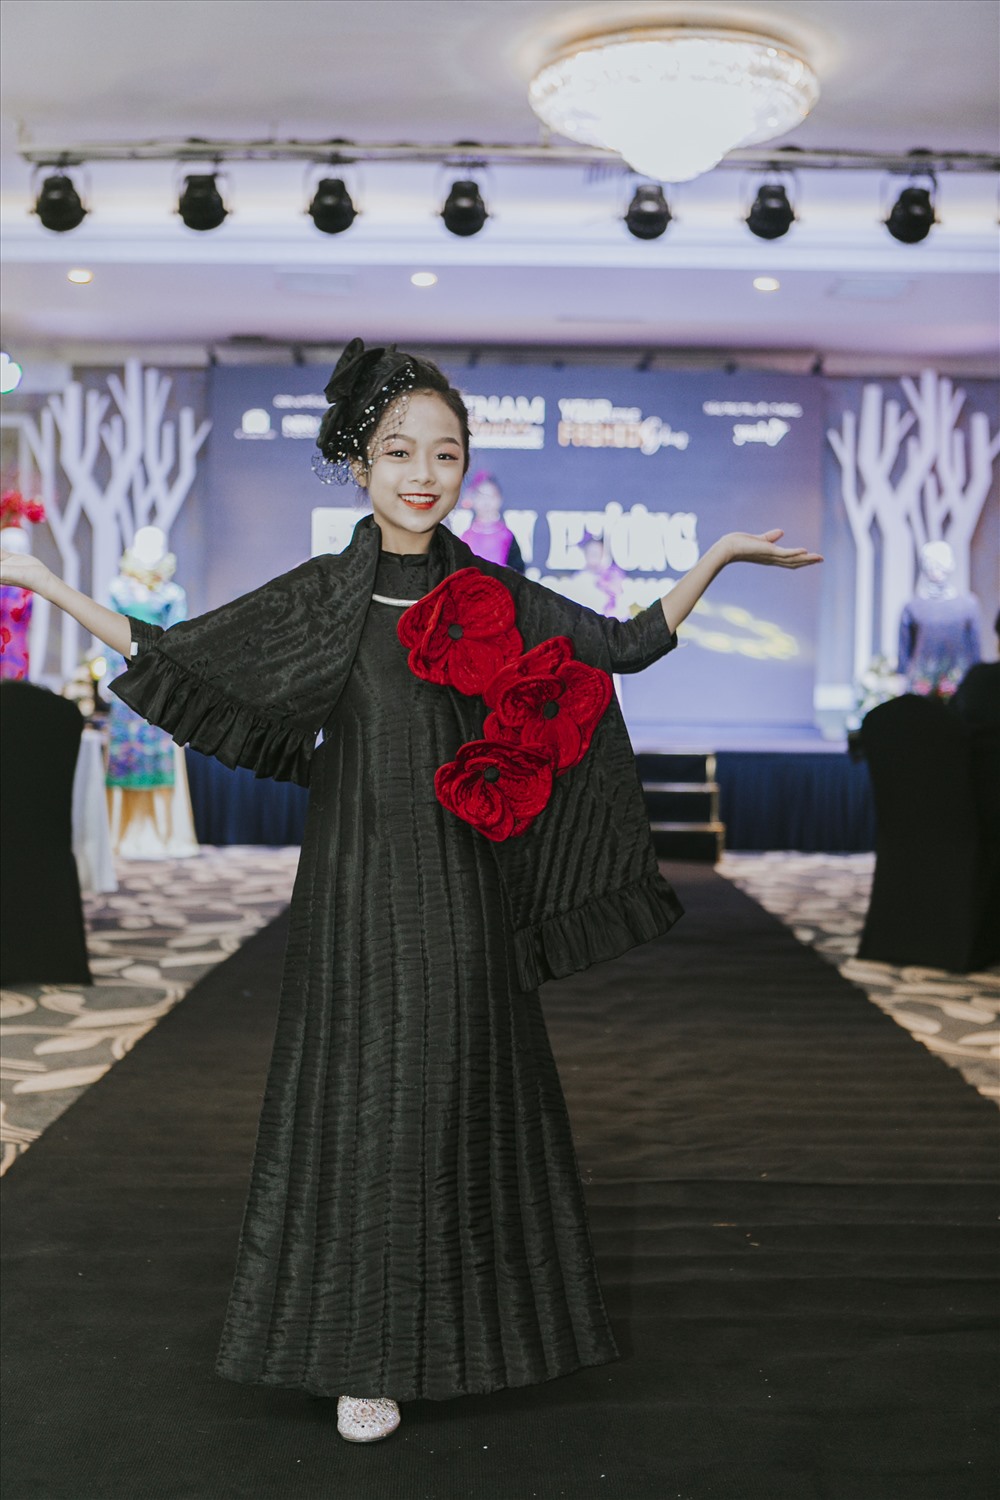 13 bộ sưu tập mới nhất của các thương hiệu thời trang danh tiếng đến từ Việt Nam, Hàn Quốc, Anh Quốc, Thái Lan, Tây Ban Nha sẽ được trình diễn bởi hơn 300 người mẫu nhí đình đám, cùng nhiều người mẫu nổi danh của làng catwalk Việt.